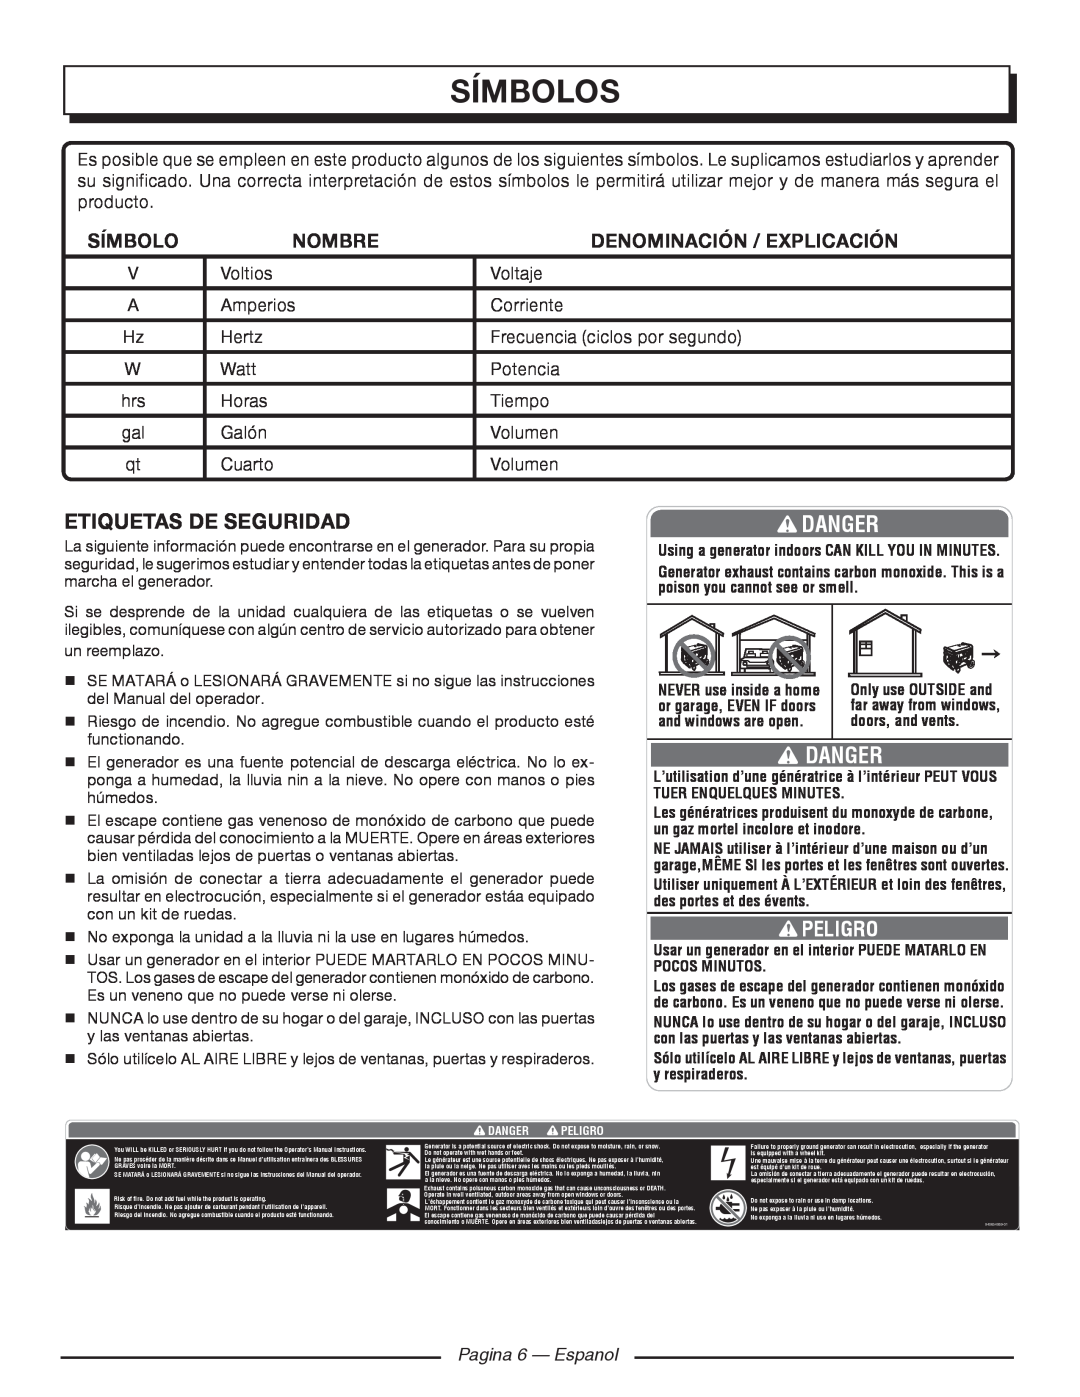 Homelite HGCA1400 manuel dutilisation Símbolos, Danger, Etiquetas De Seguridad, Peligro, Nombre, Denominación / Explicación 